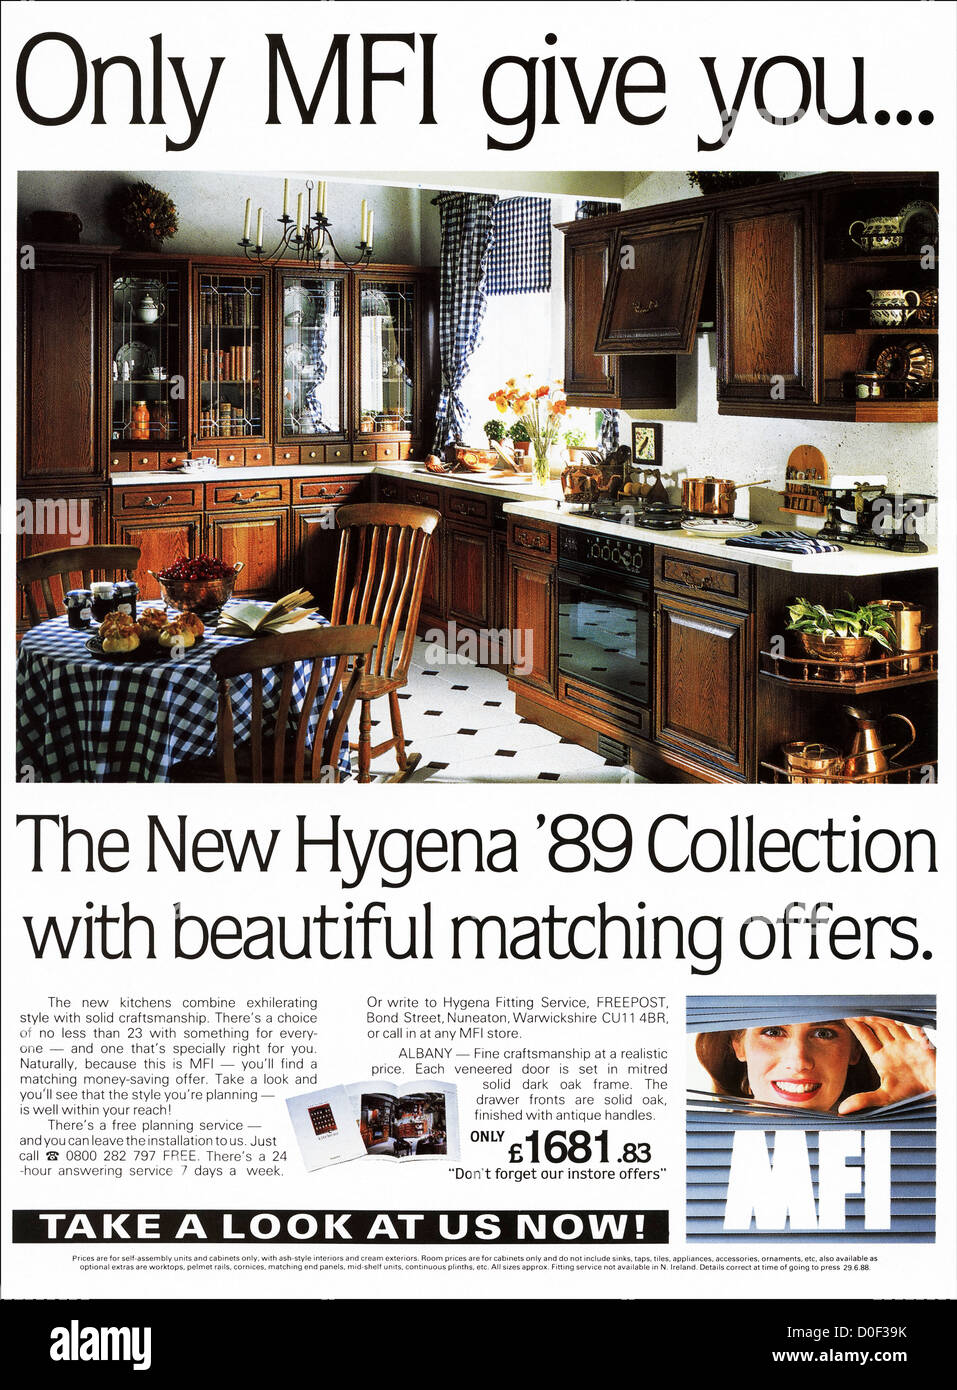 Originale degli anni ottanta per la pubblicità a mezzo stampa dal consumatore inglese pubblicità su riviste Hygena cucina dalle IFM Foto Stock